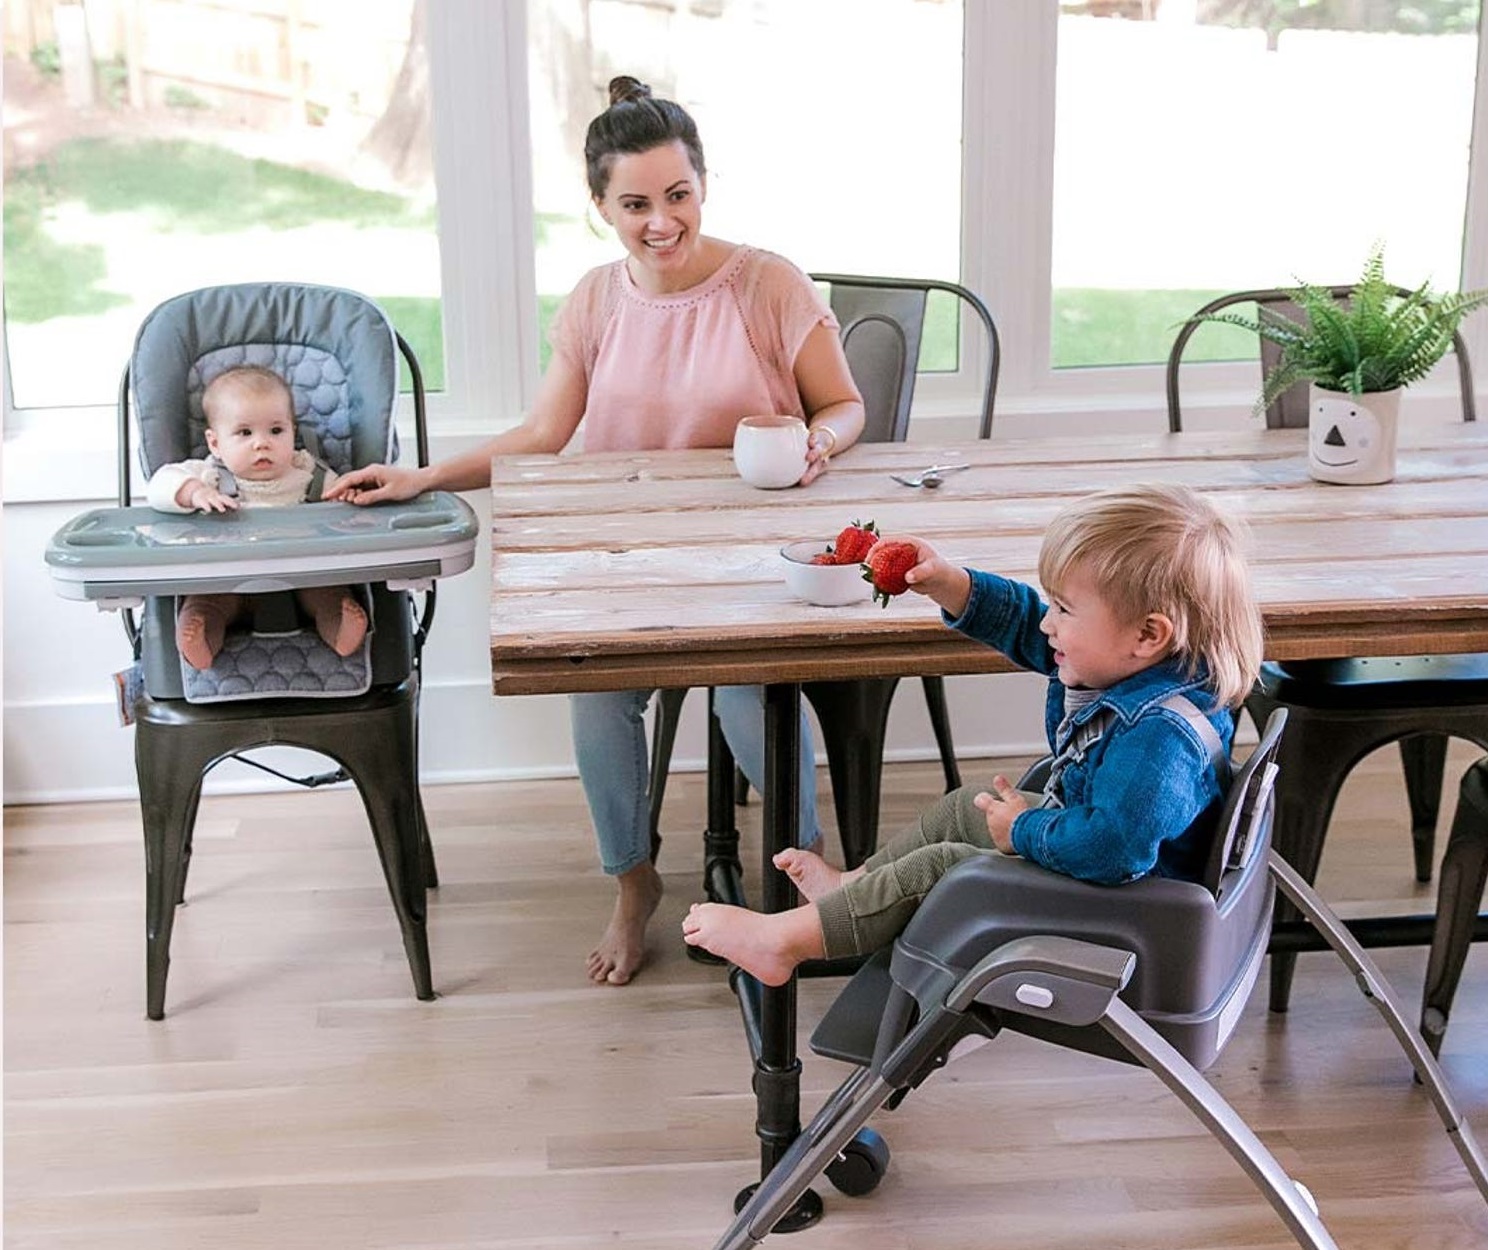 مزایای استفاده از صندلی غذای کودک این است که نشستن کودک روی صندلی خودش و غذاخوردن در کنار پدر و مادر، حس نزدیکی و آرامش به او می‌دهد.